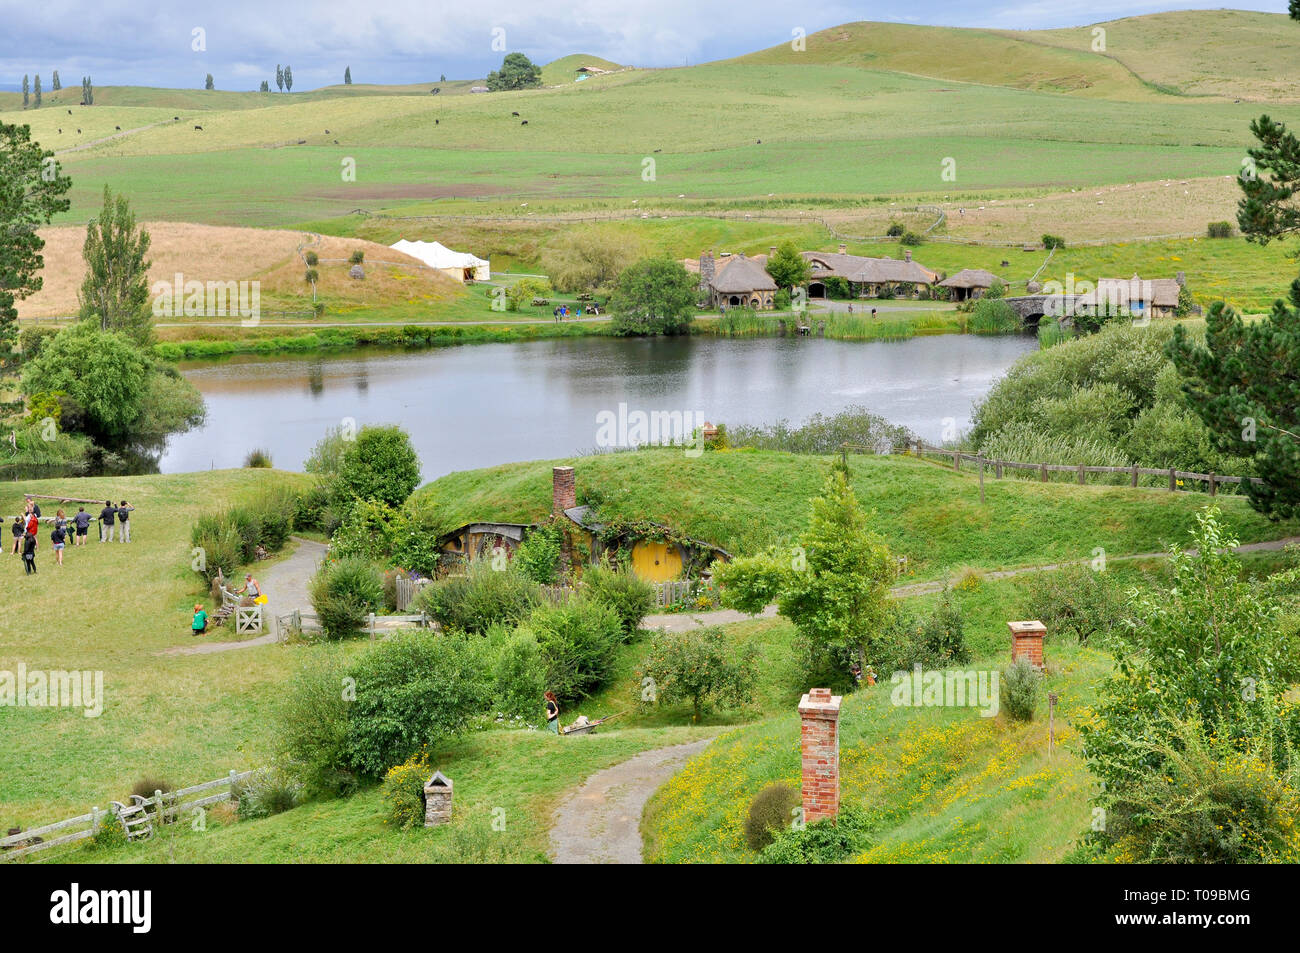 Hobbiton película rodada en la región de Waikato de Nueva Zelanda Isla del Norte. Colinas de la comarca con el lago, el molino, el puente, el Green Dragon Inn. Los visitantes Foto de stock